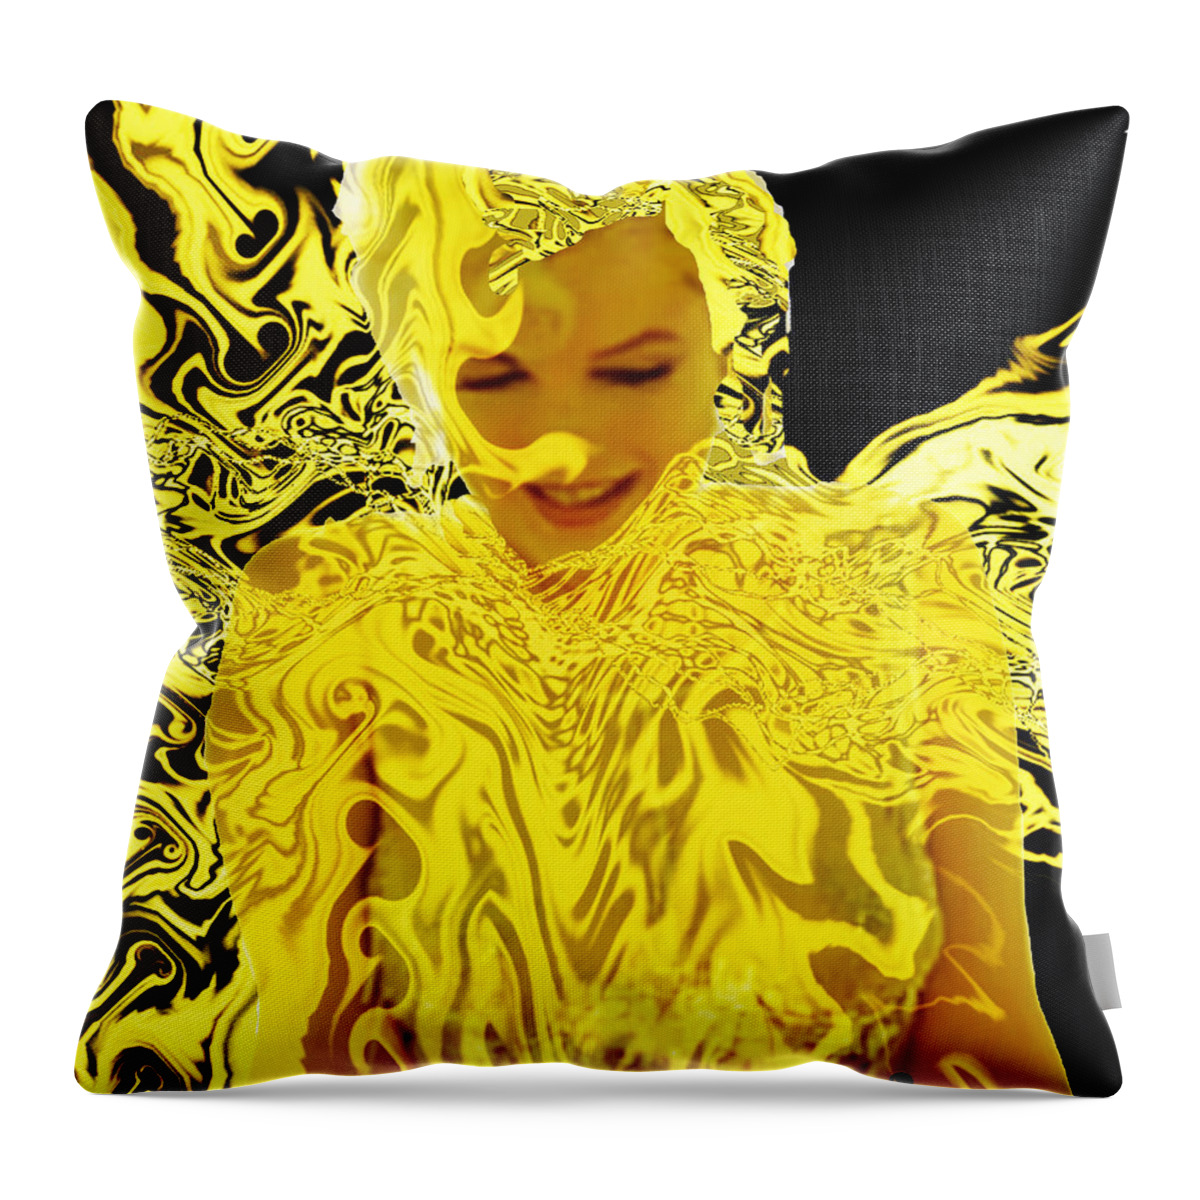 Golden Goddess Throw Pillow featuring the digital art Golden Goddess by Seth Weaver